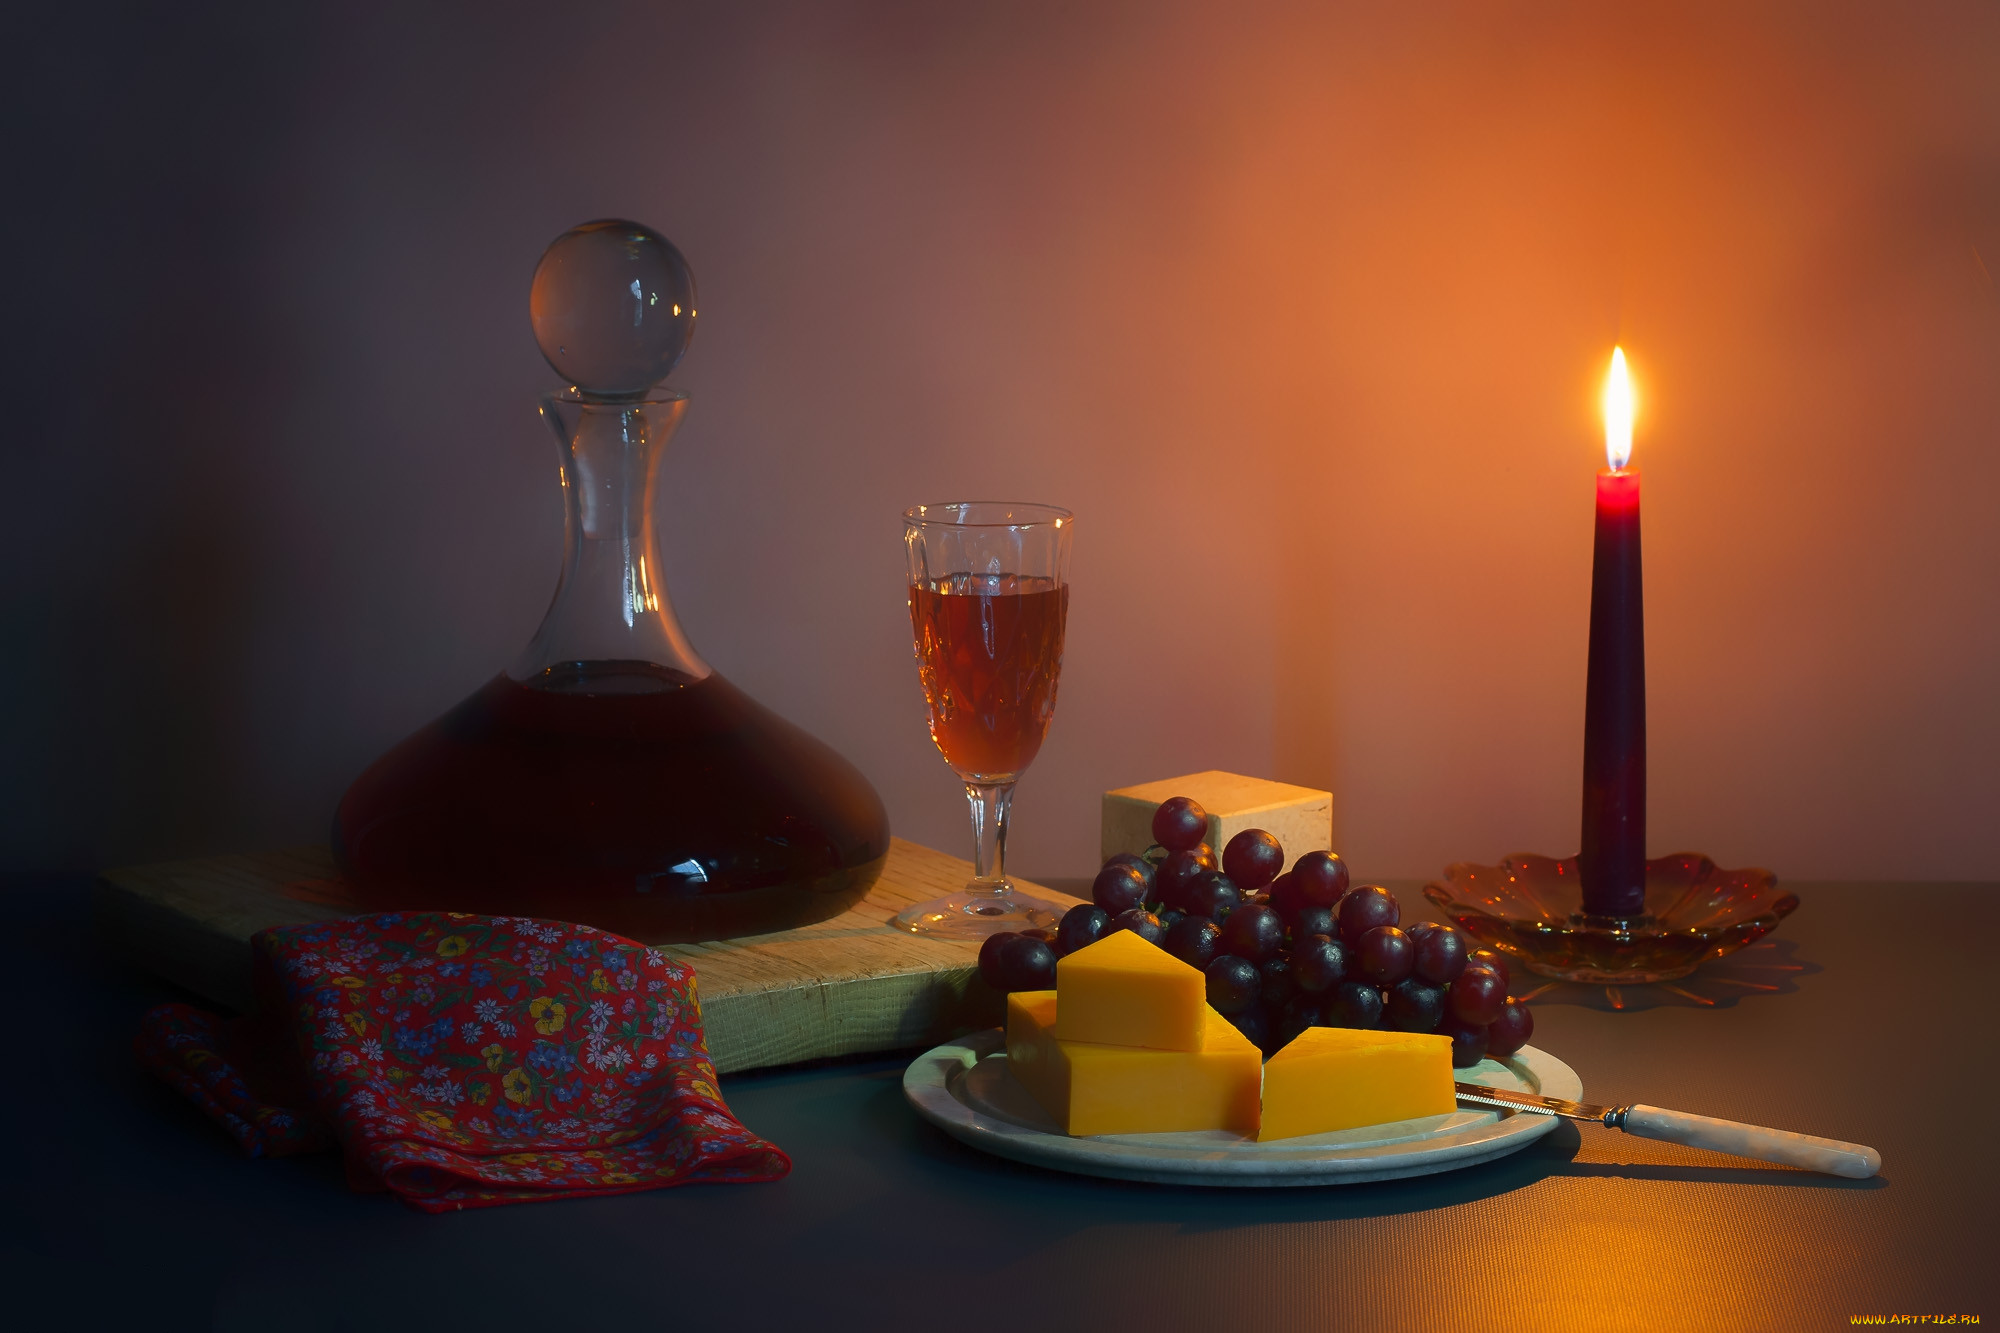 Песня на столе коньяк и свечи догорают. Натюрморт со свечой. Вино и свечи. Красивые натюрморты со свечами. Натюрморт ужин.